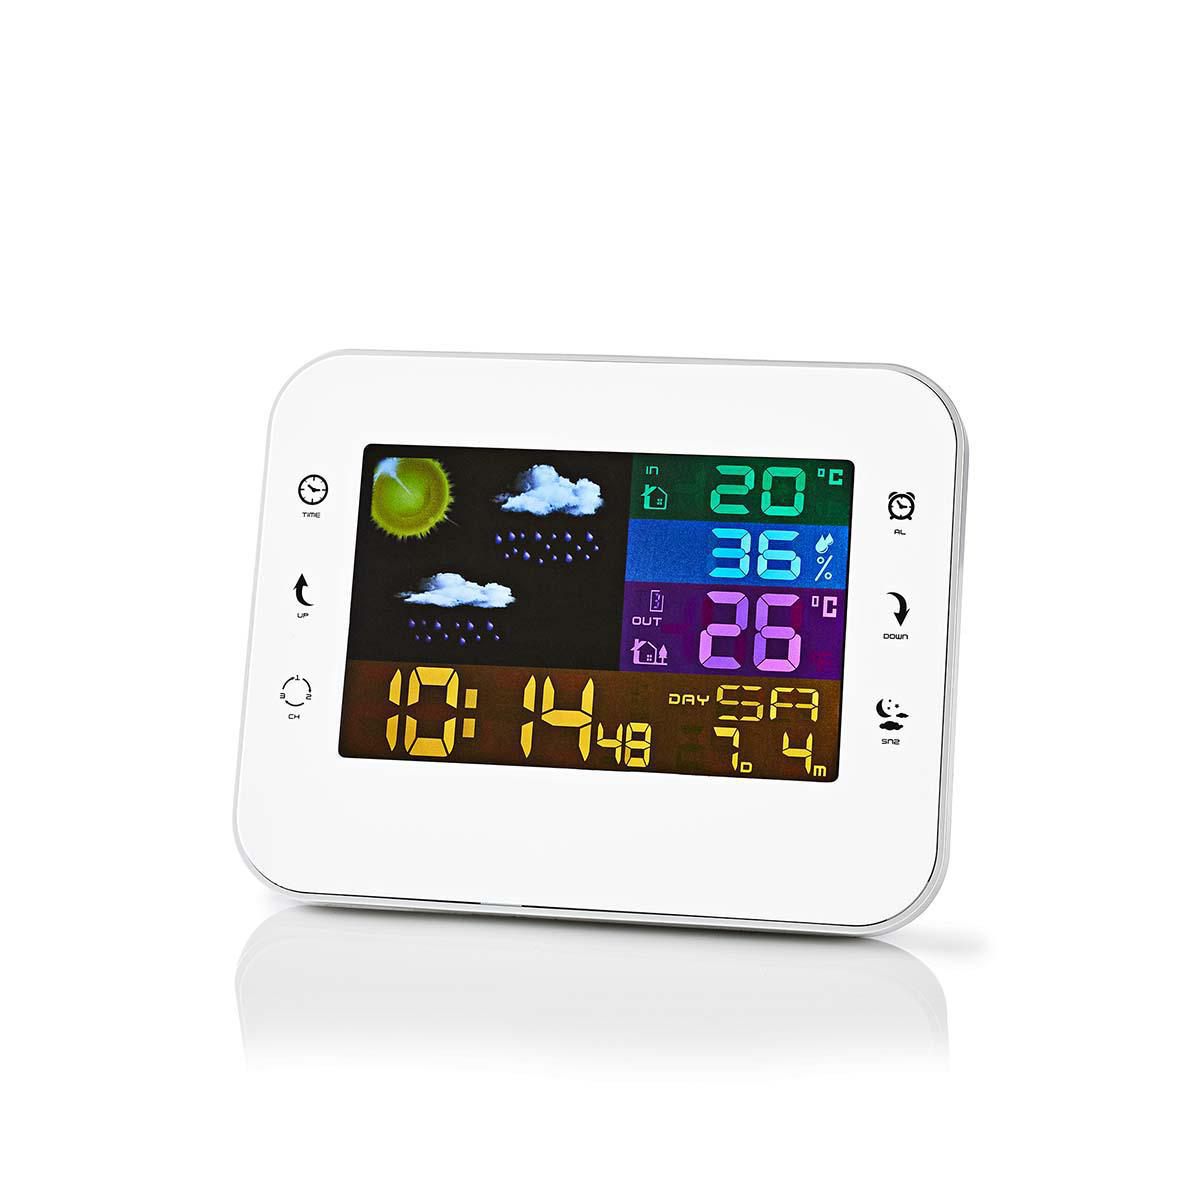 Kalawen Stazione Meteo Automatica Digitale Wireless Meteorologica con Ampio Schermo LCD Display Sveglia Tempo Data Temperatura umidità Previsioni di Tempo con Sensore Esterno Wireless 